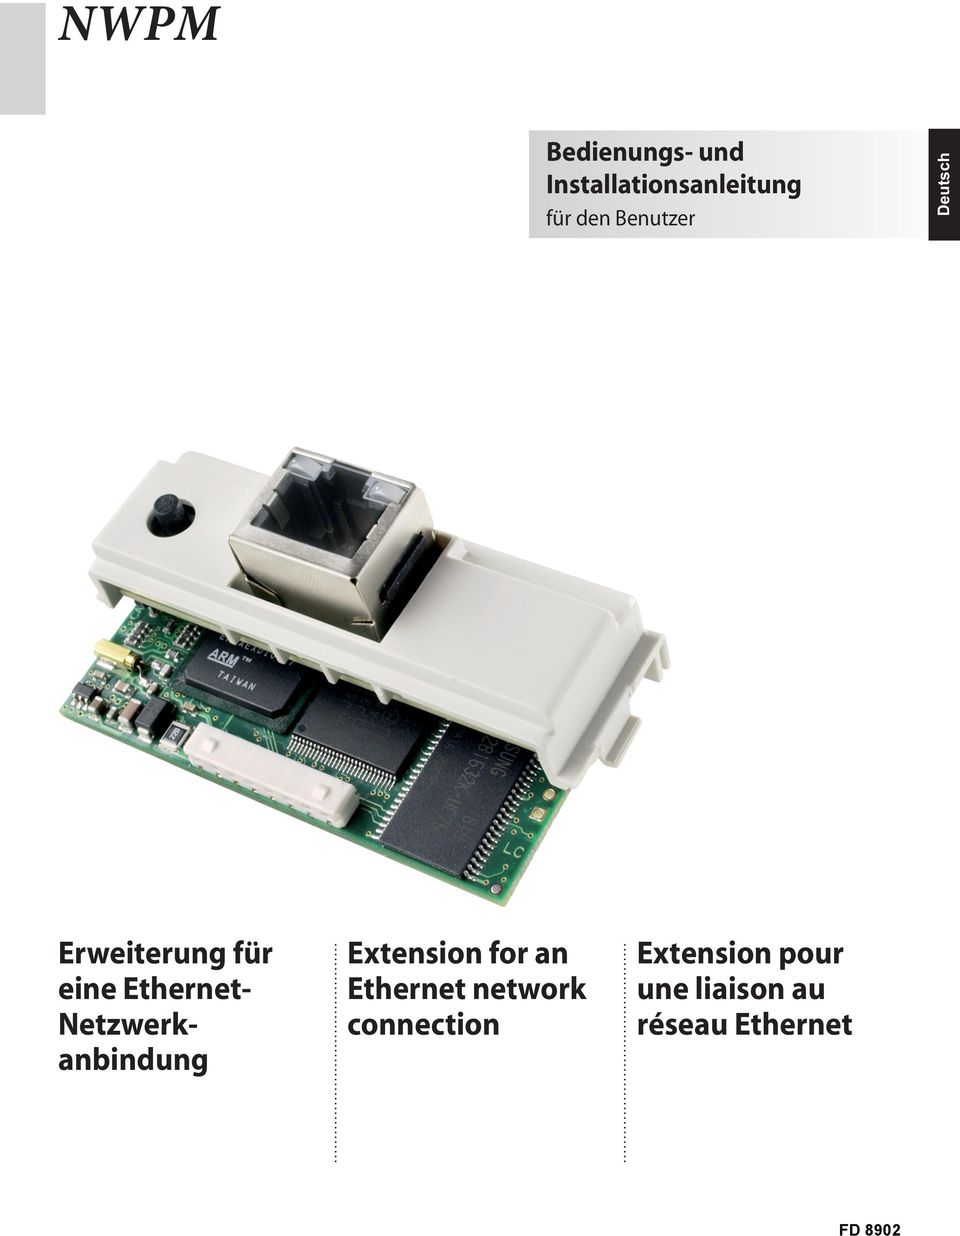 EthernetNetzwerkanbindung Extension for an Ethernet